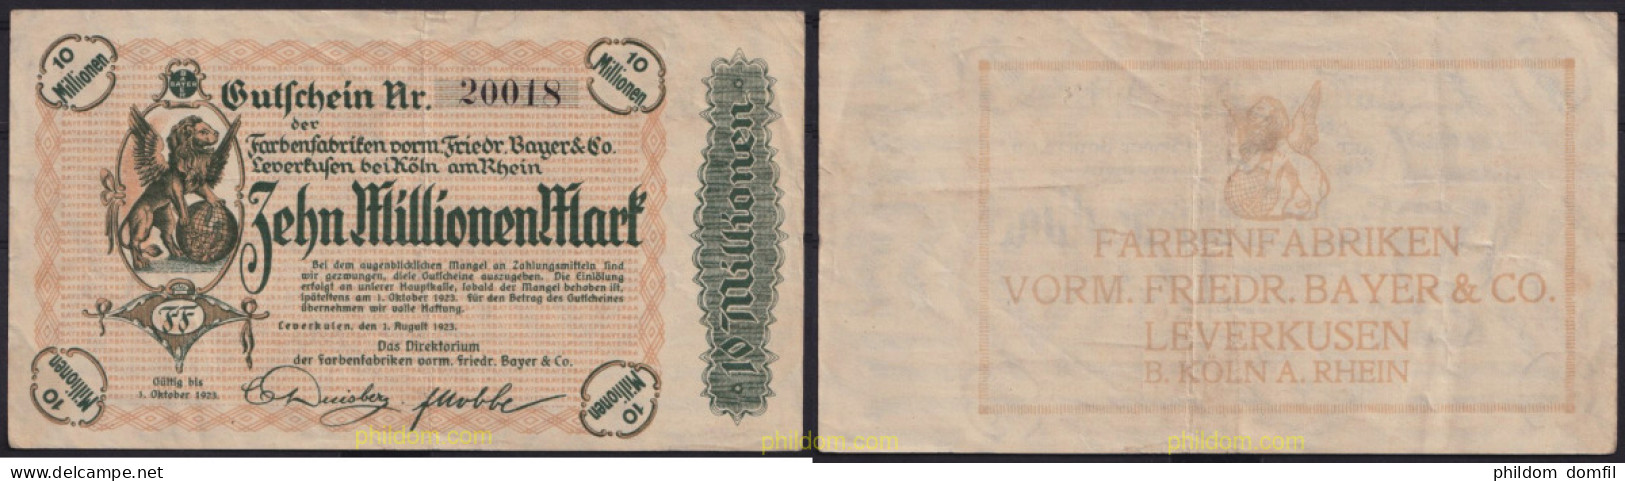 3671 ALEMANIA 1923 GERMANY 10000000 MARK 1923 LEVERKUSEN FARBENFABRIKEN VORM FRIEDR. BAYER & CO - Administration De La Dette